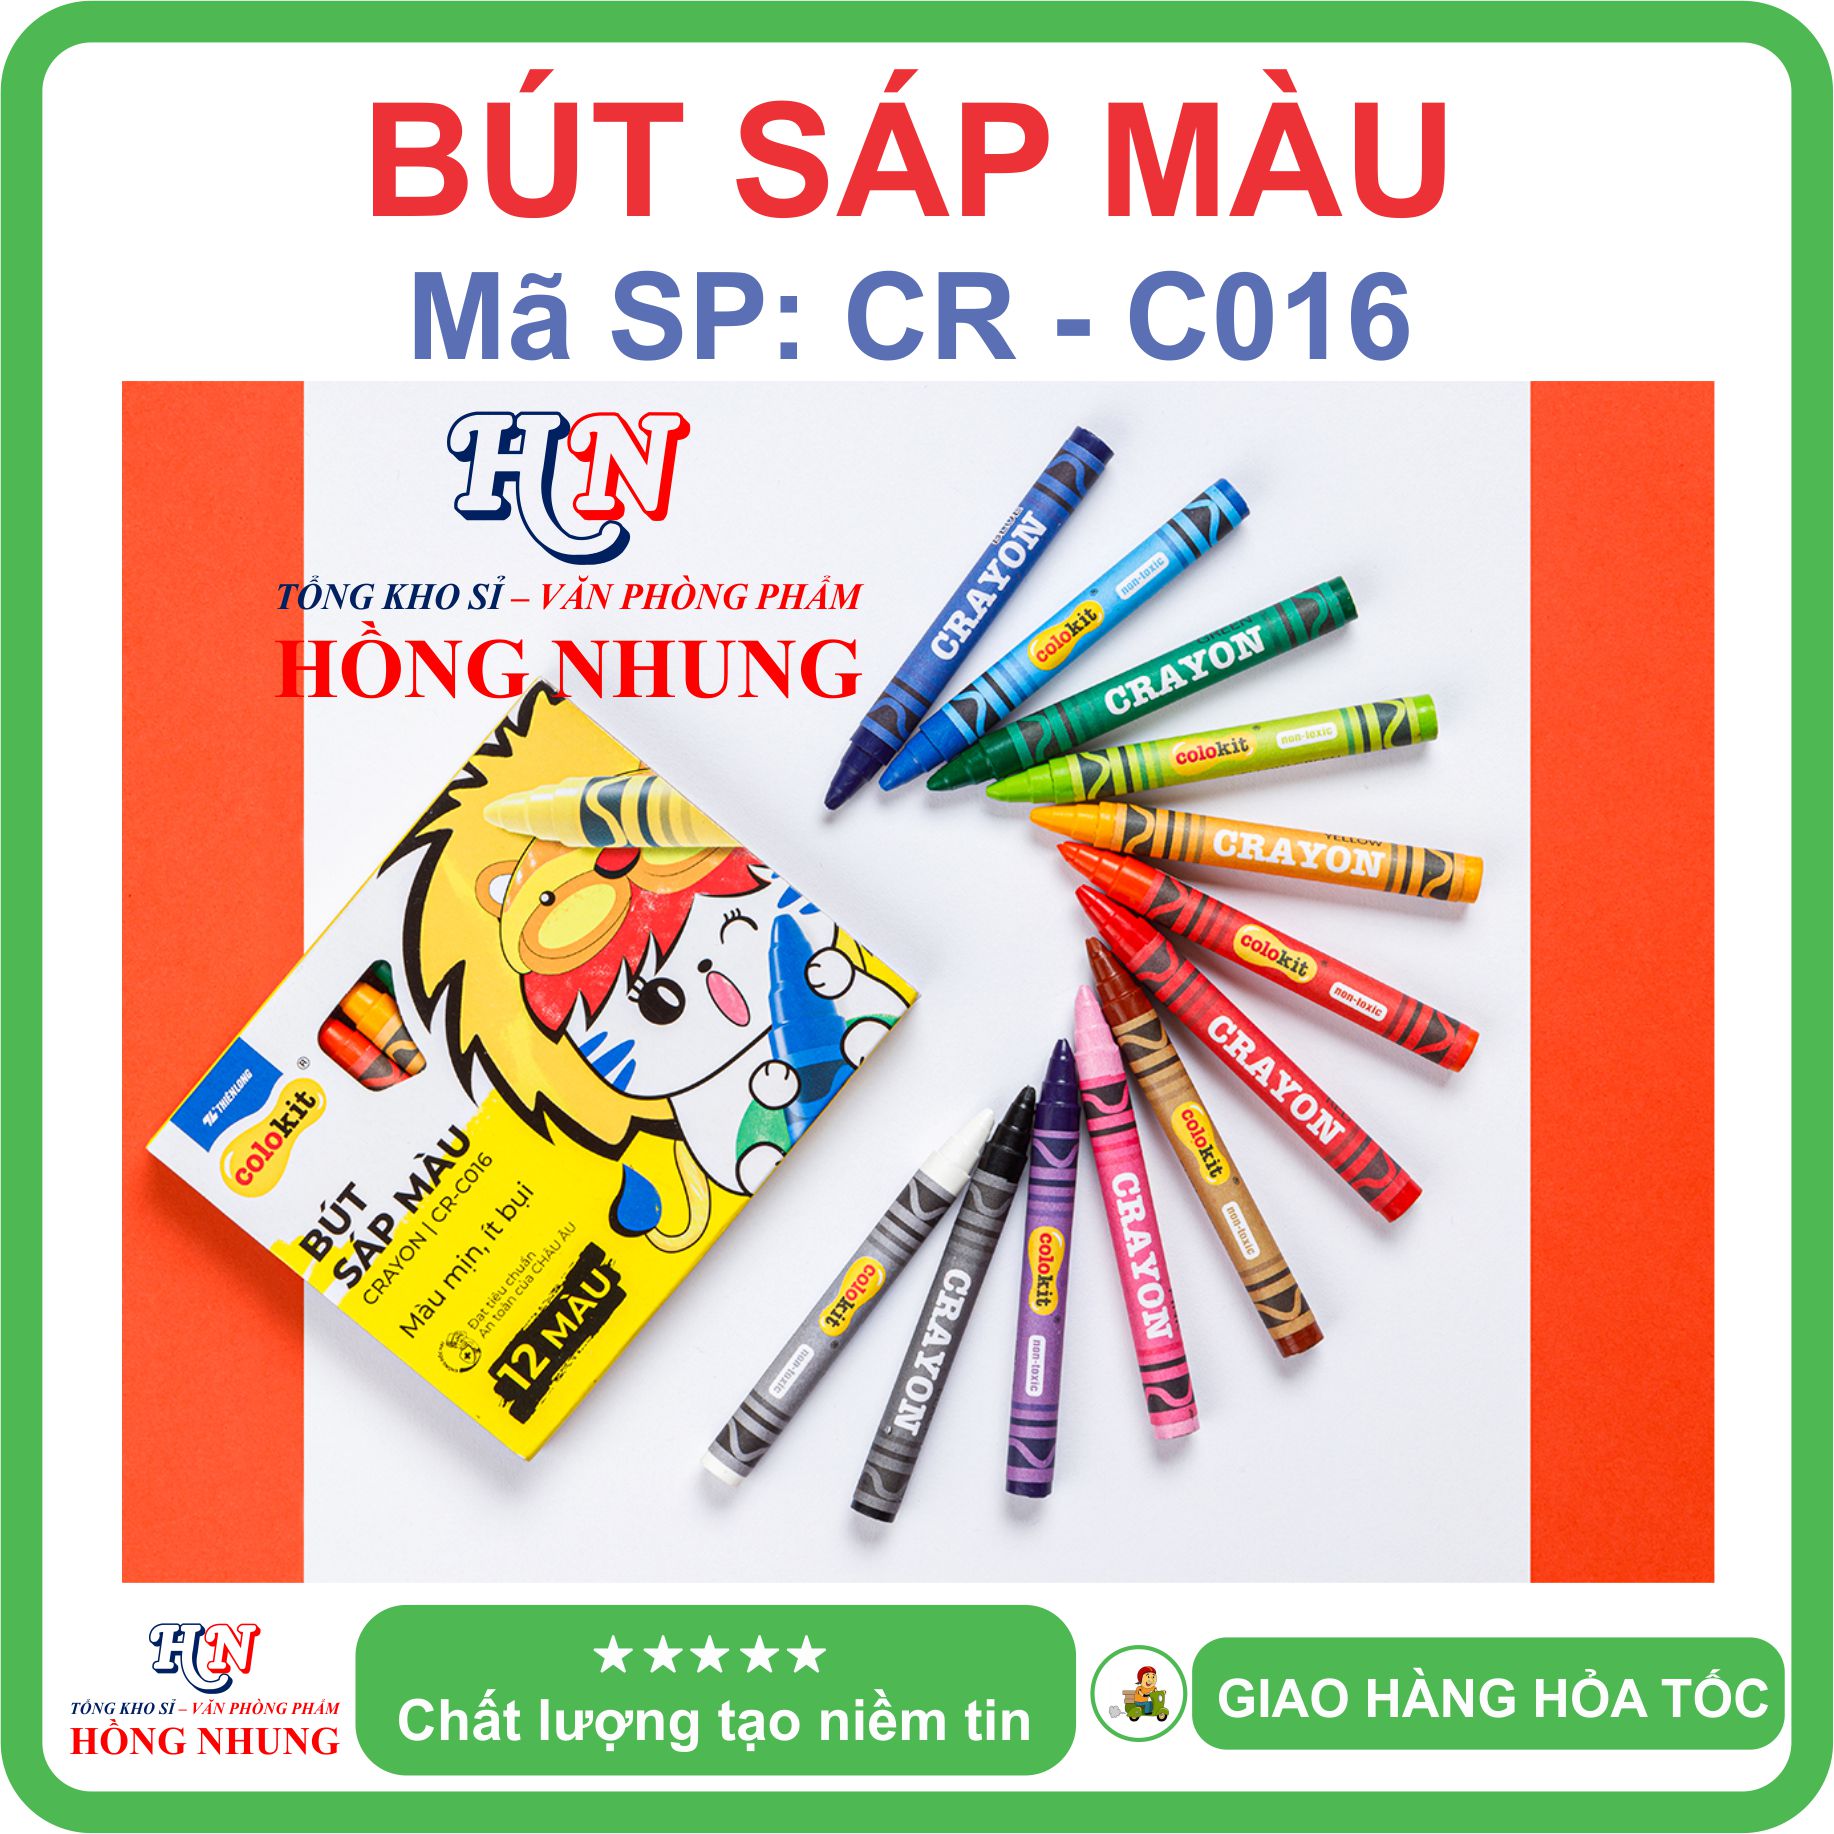 [SALE] Hộp 12 Bút sáp màu Colokit CR-C016, màu mịn, dễ thương, an toàn cho trẻ em.